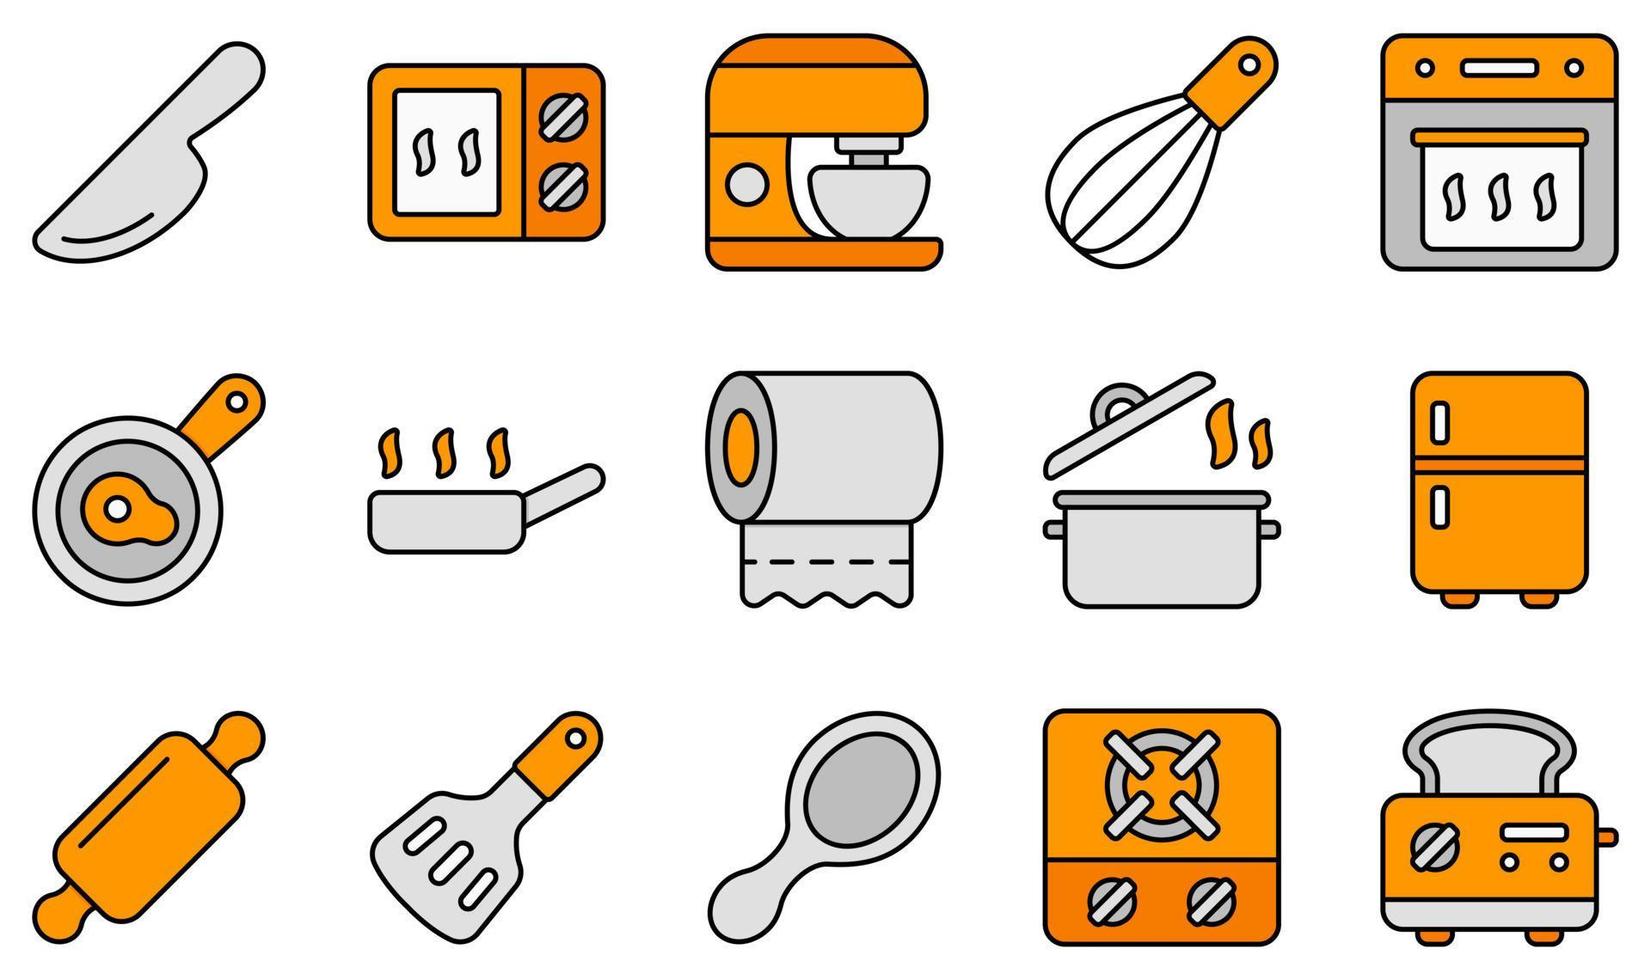 conjunto de ícones vetoriais relacionados à cozinha. contém ícones como faca, microondas, batedeira, forno, panela, toalhas de papel e muito mais. vetor